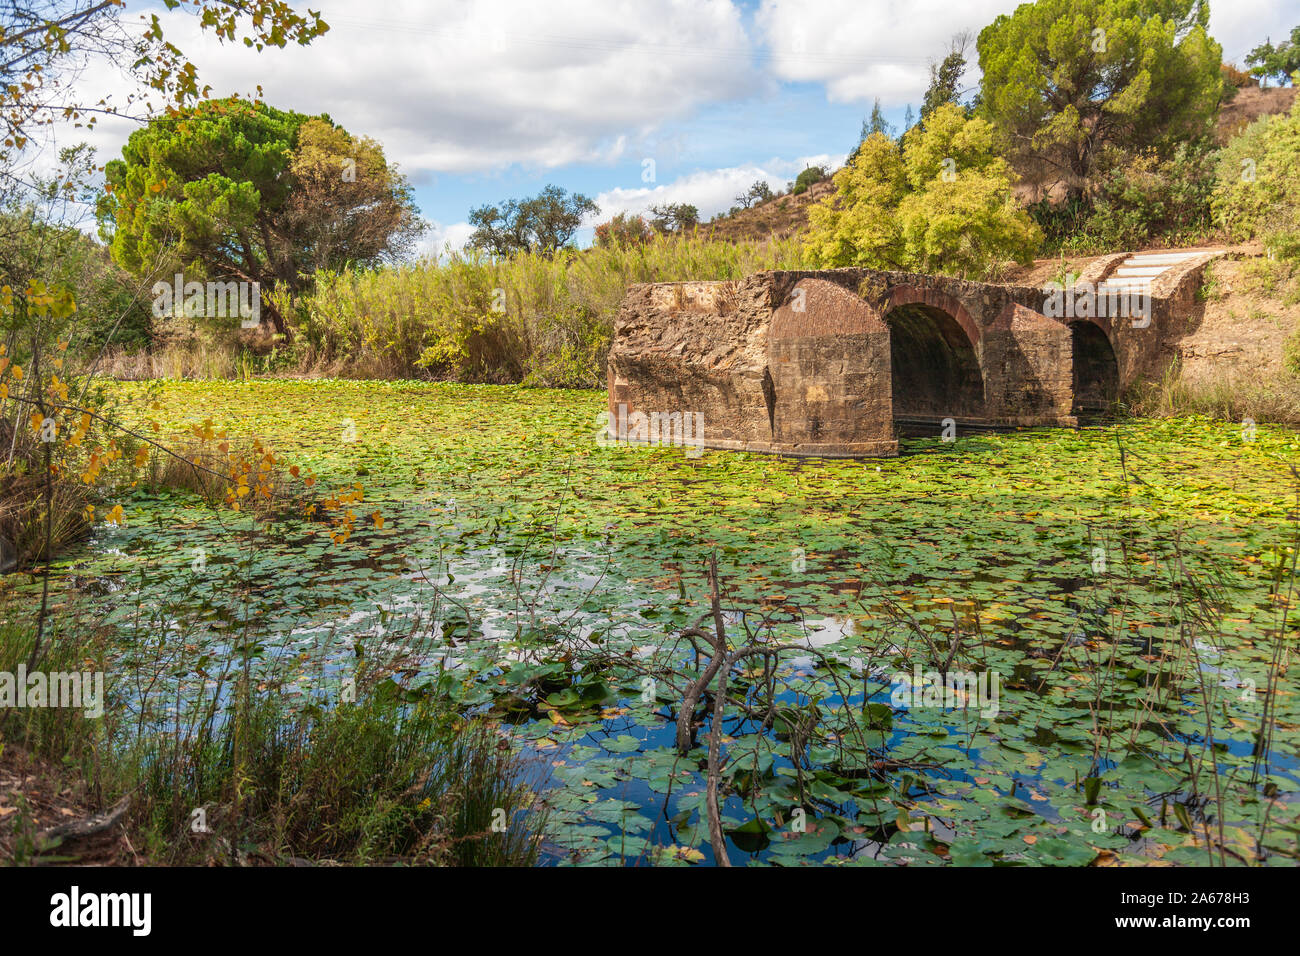 Ruines du pont romain étang recouvert de nénuphars à la campagne au portugal Banque D'Images